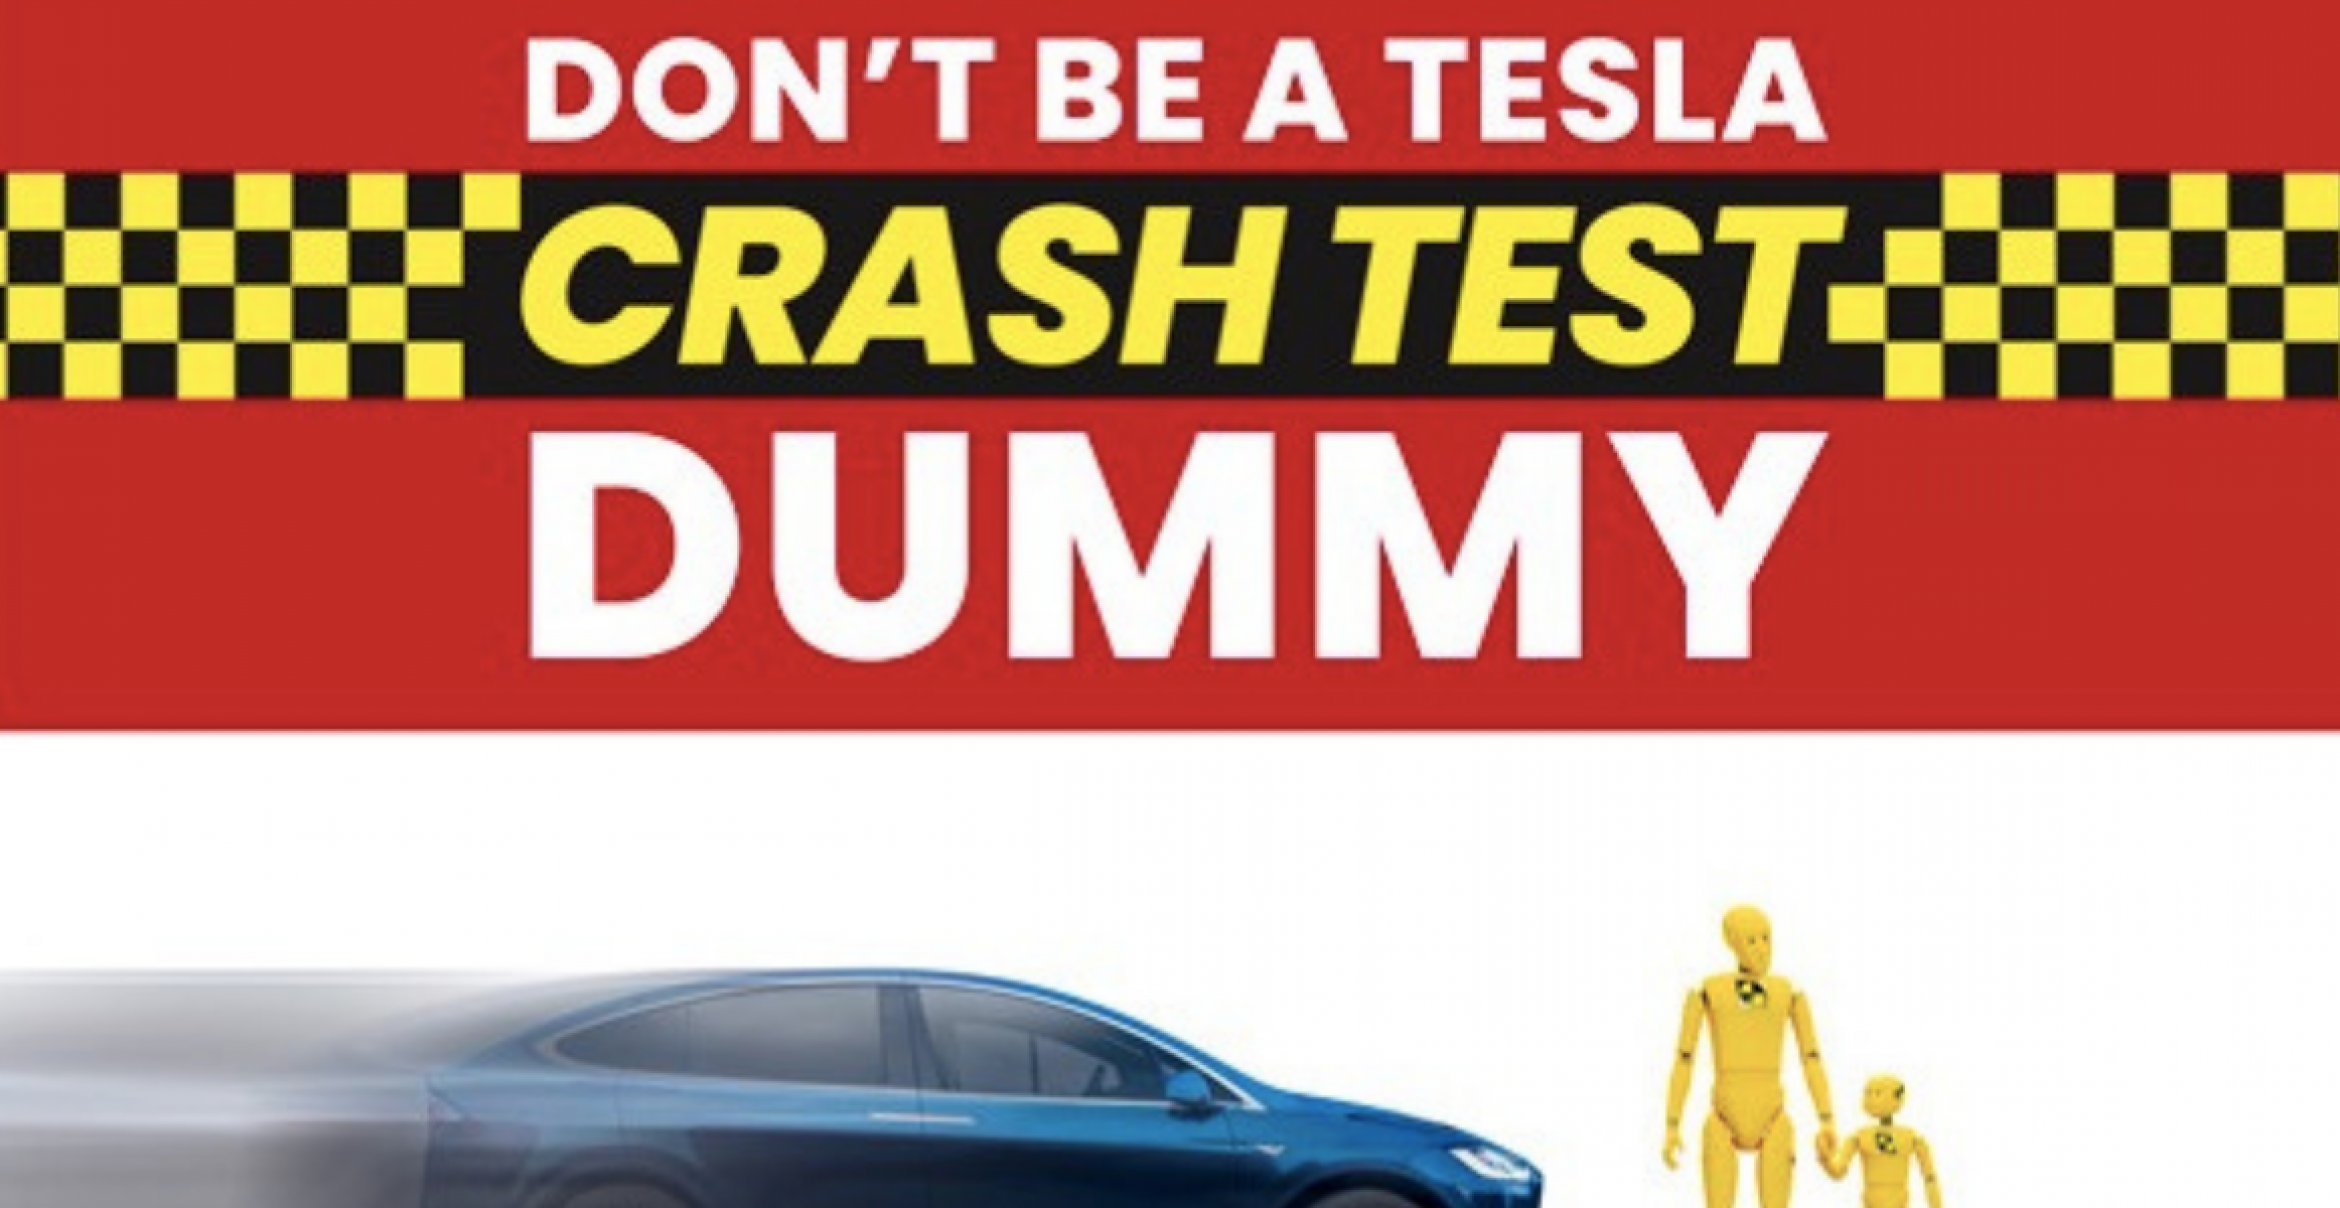 Riesige Werbeanzeige gegen Tesla in der NYT – Was steckt dahinter?